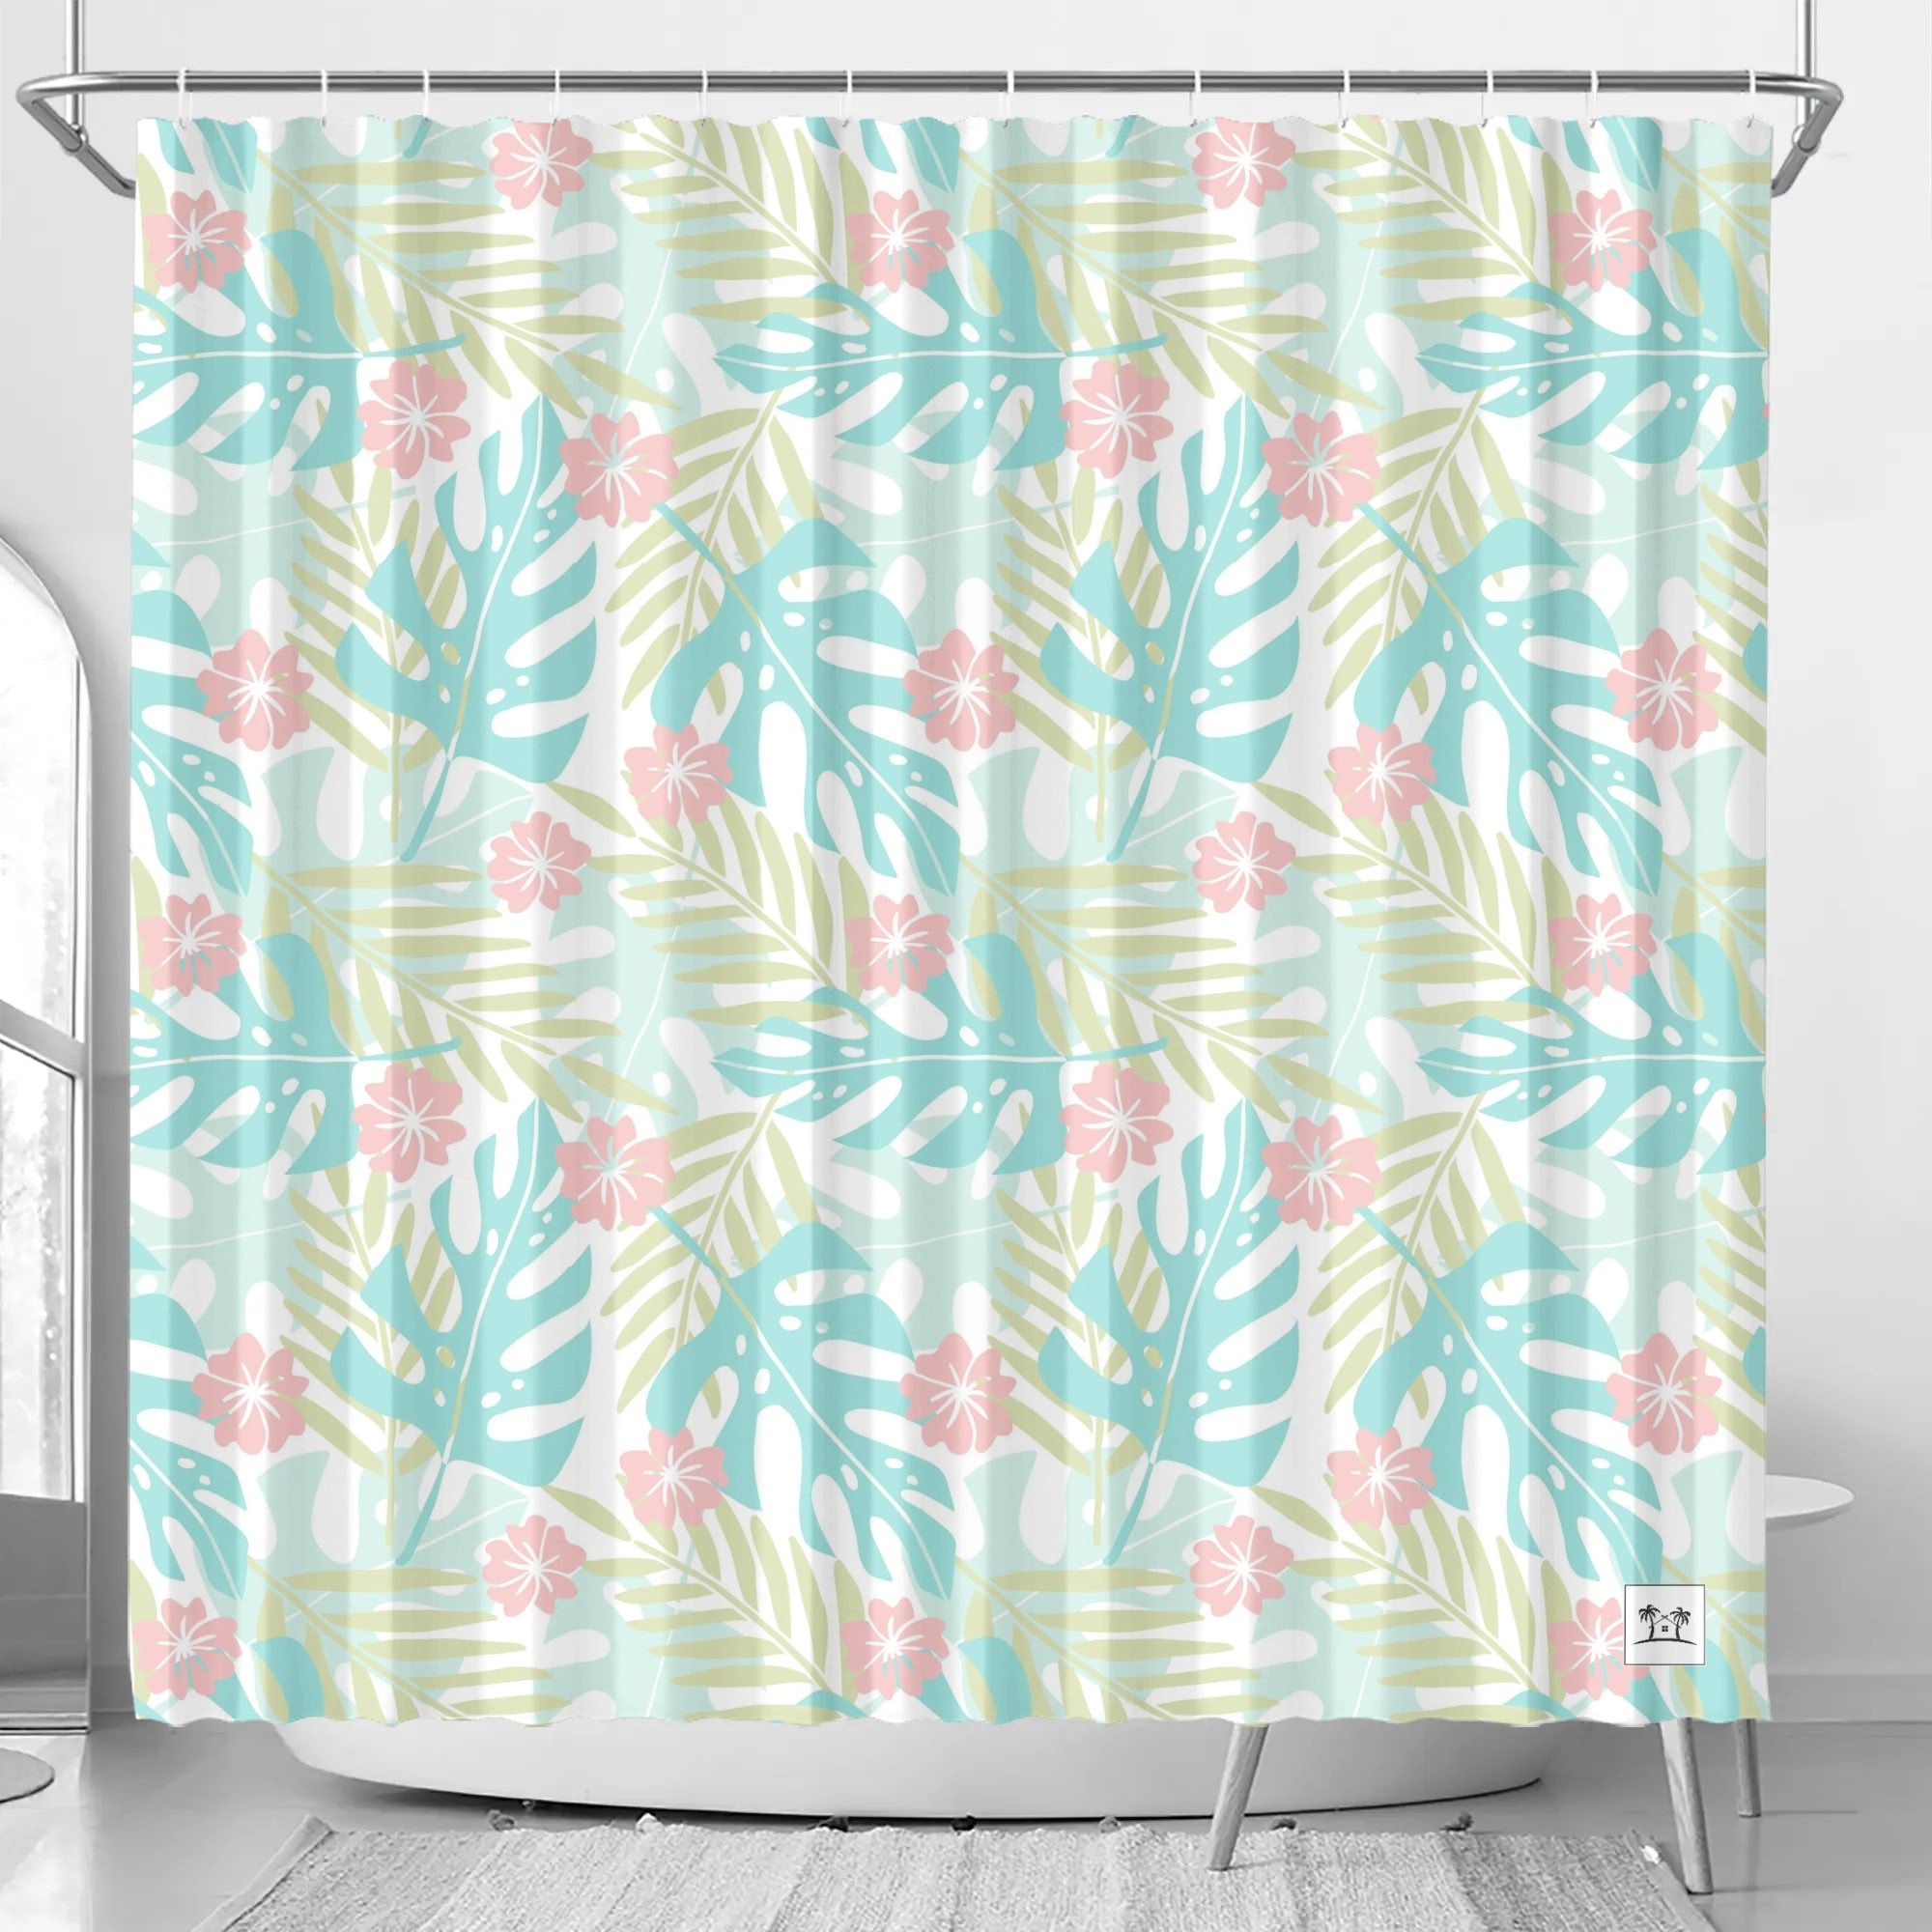 Waterproof Shower Curtain - Tropical Print in Pastels